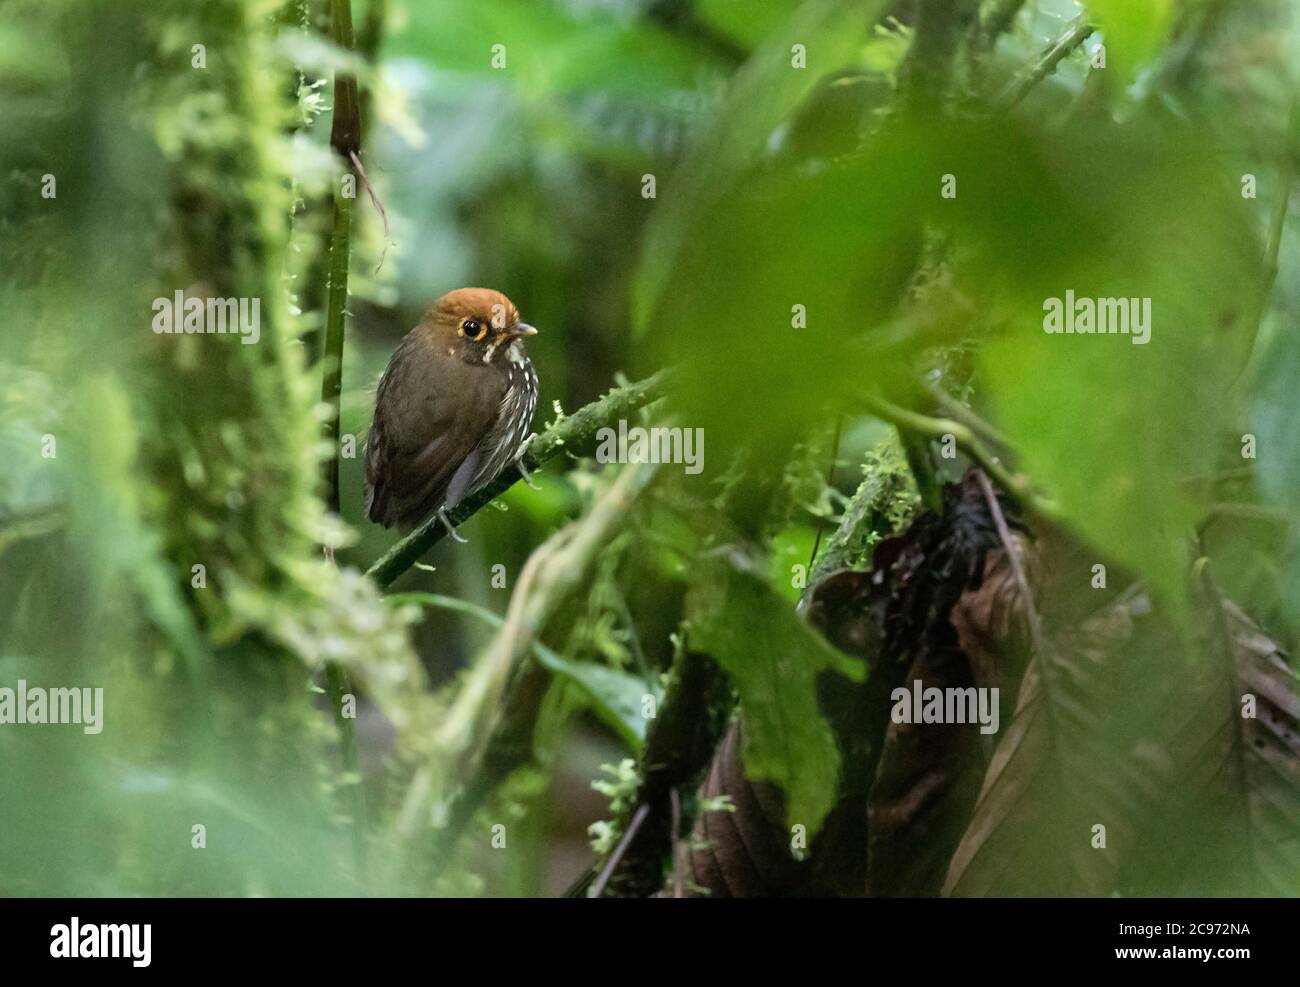 Antpitta peruana (Grallaricula peruviana), encaramado en el sotobosque húmedo montano tropical ecuatoriano en la vertiente este de los Andes, Ecuador Foto de stock